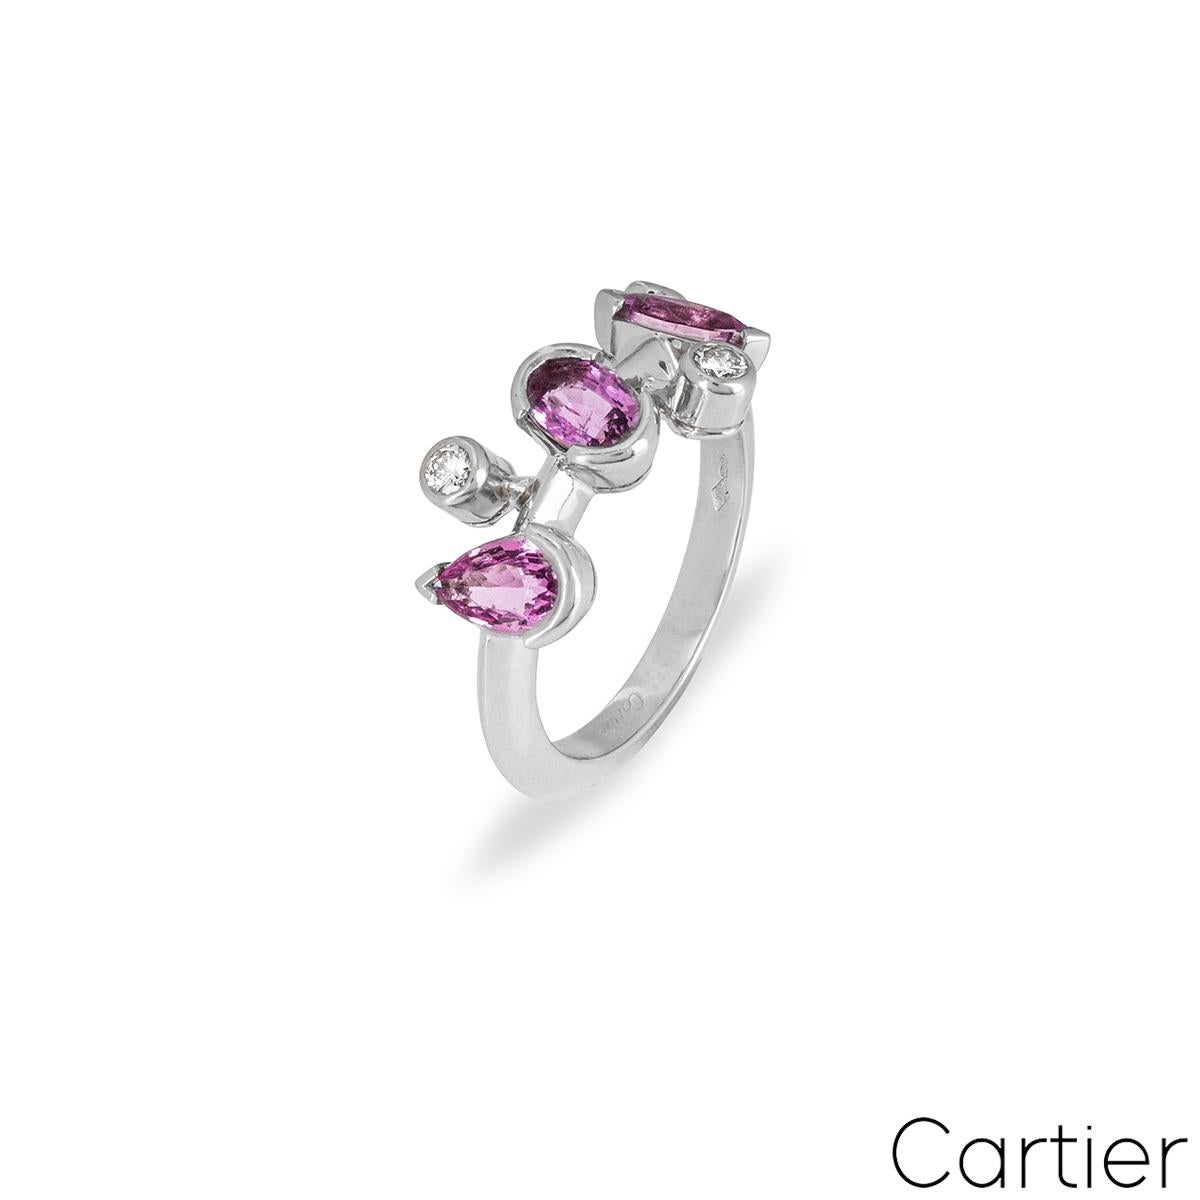 Ein hübscher Ring aus Platin mit rosa Saphiren und Diamanten aus der Kollektion Cartier Meli Melo. Der Ring ist mit einer Auswahl von rosa Saphiren im Marquise-, Oval- und Birnenschliff  von ca. insgesamt 1,30 ct und 3 runden Diamanten im